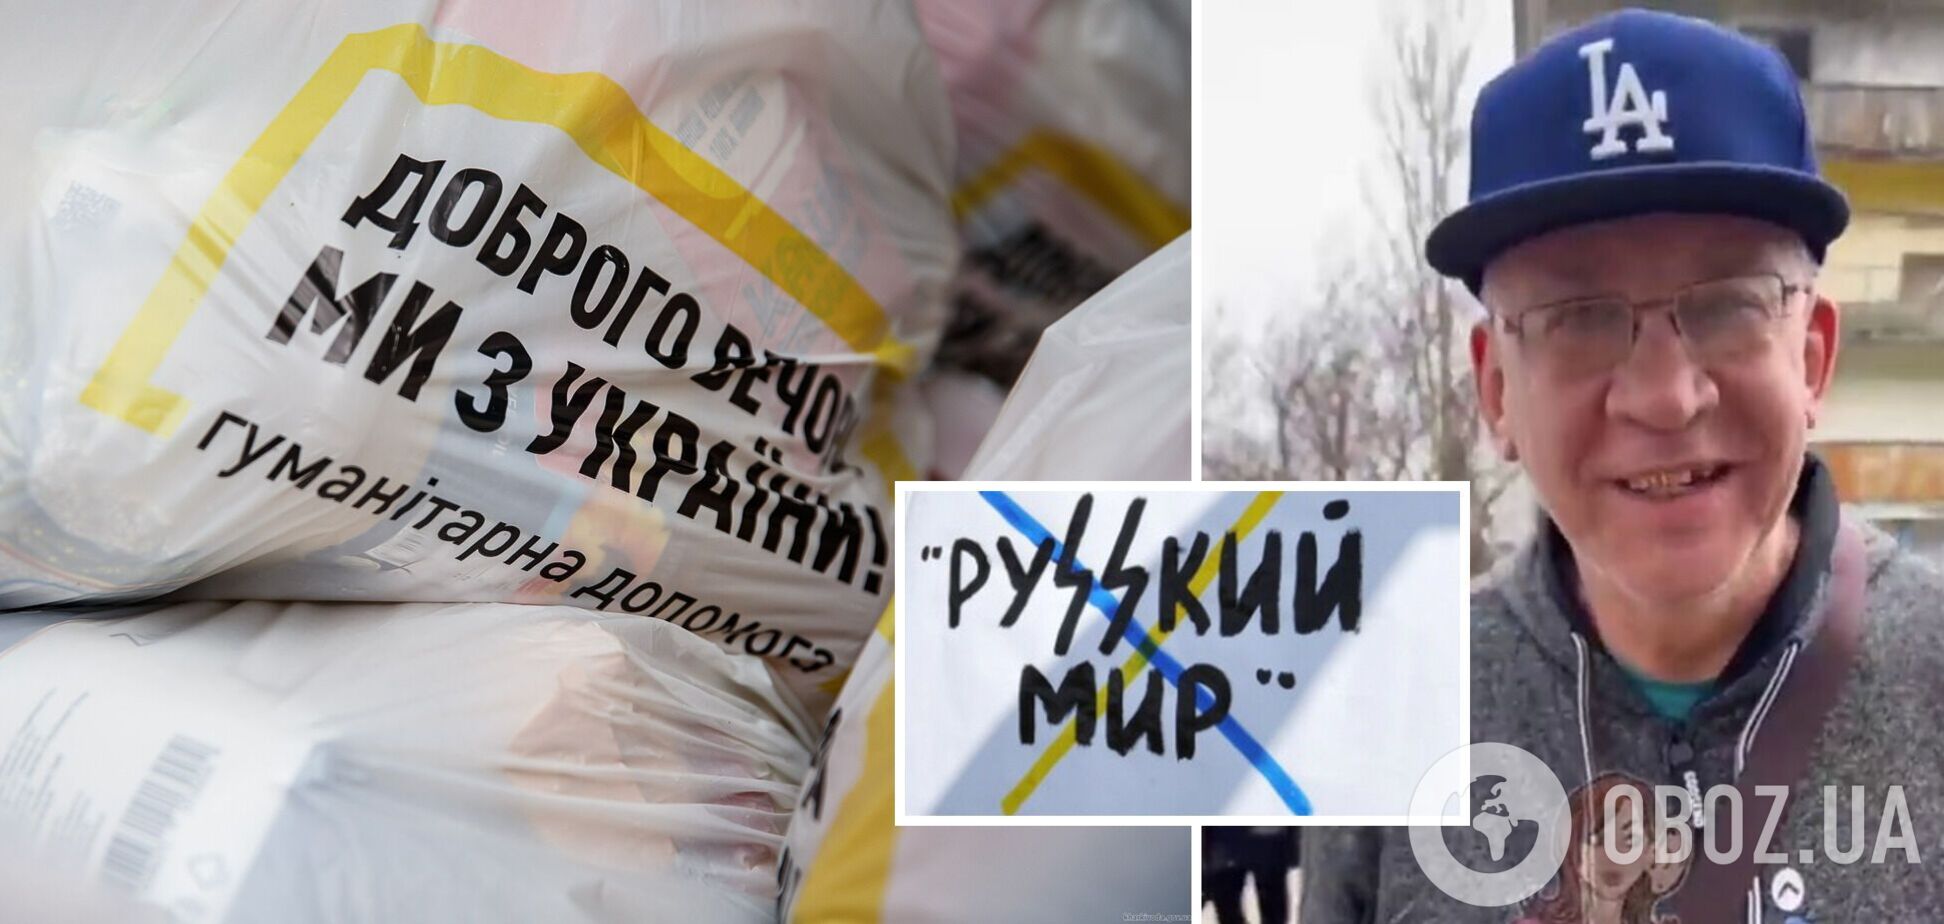 'Я россиян больше люблю': сторонник РФ на Донетчине пришел за украинской гуманитаркой и заявил, что он за мир. Видео